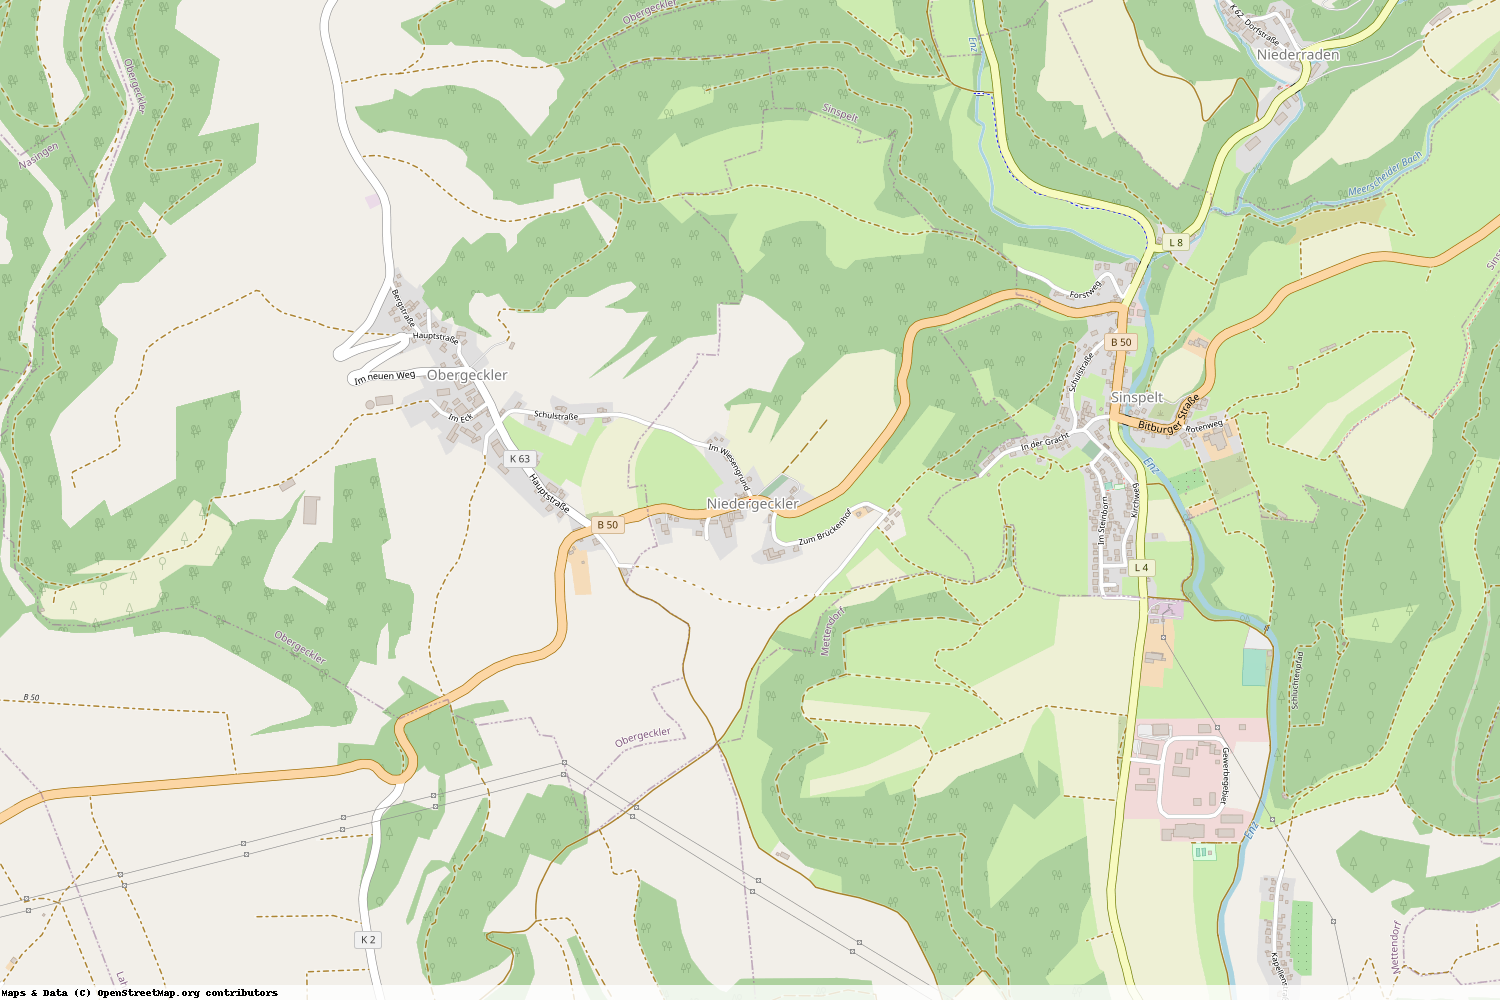 Ist gerade Stromausfall in Rheinland-Pfalz - Eifelkreis Bitburg-Prüm - Niedergeckler?